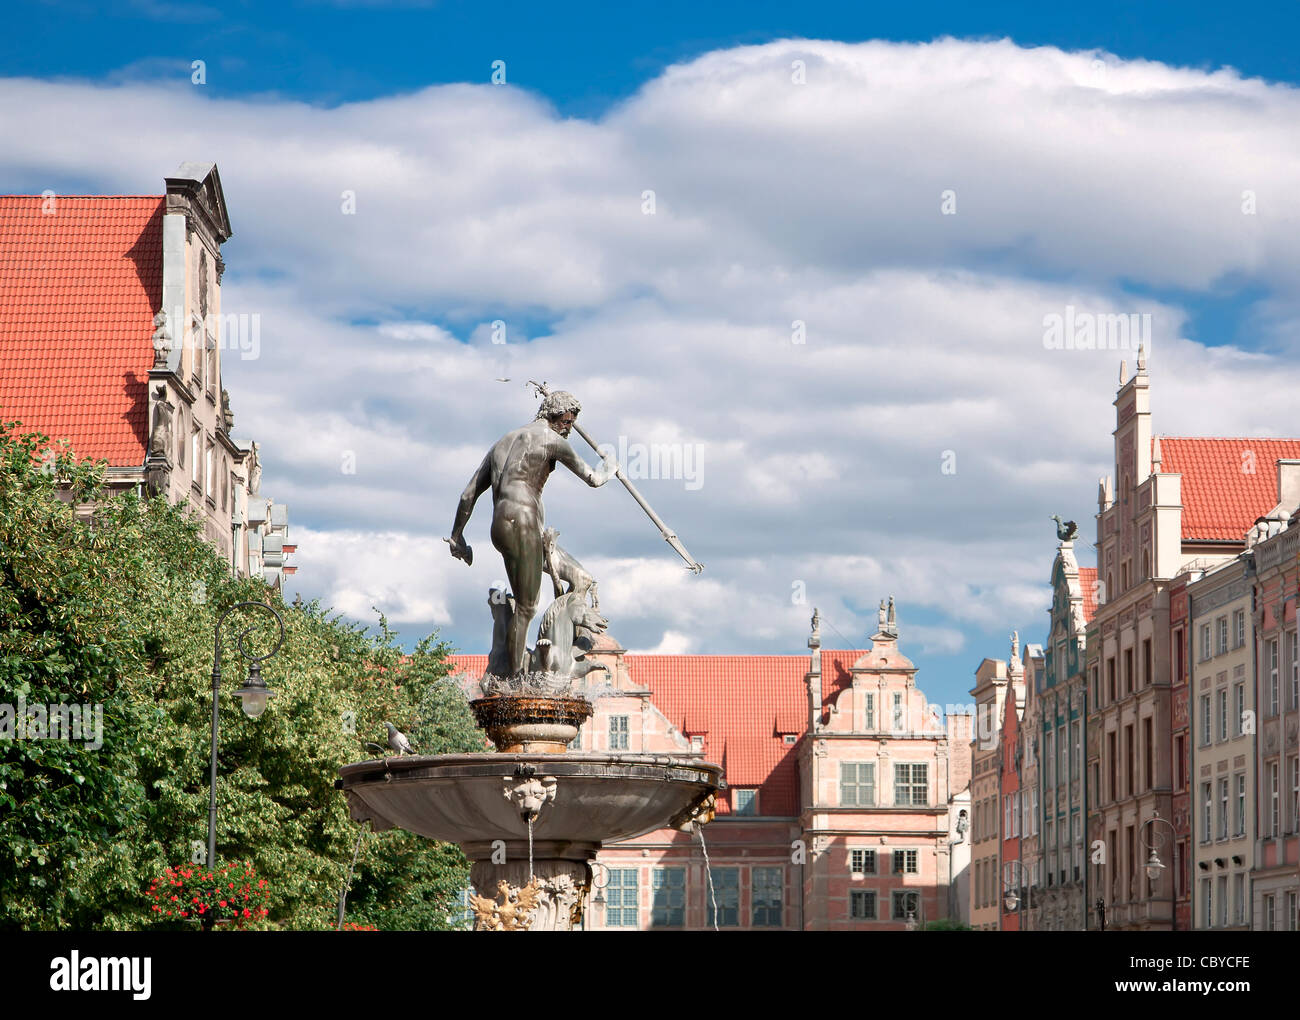 Les grandes villes en Pologne - GDANSK - Danzig. Port de la ville à la mer Baltique - Gdansk. Monuments historiques dans la vieille ville.Statue de Neptun. Banque D'Images